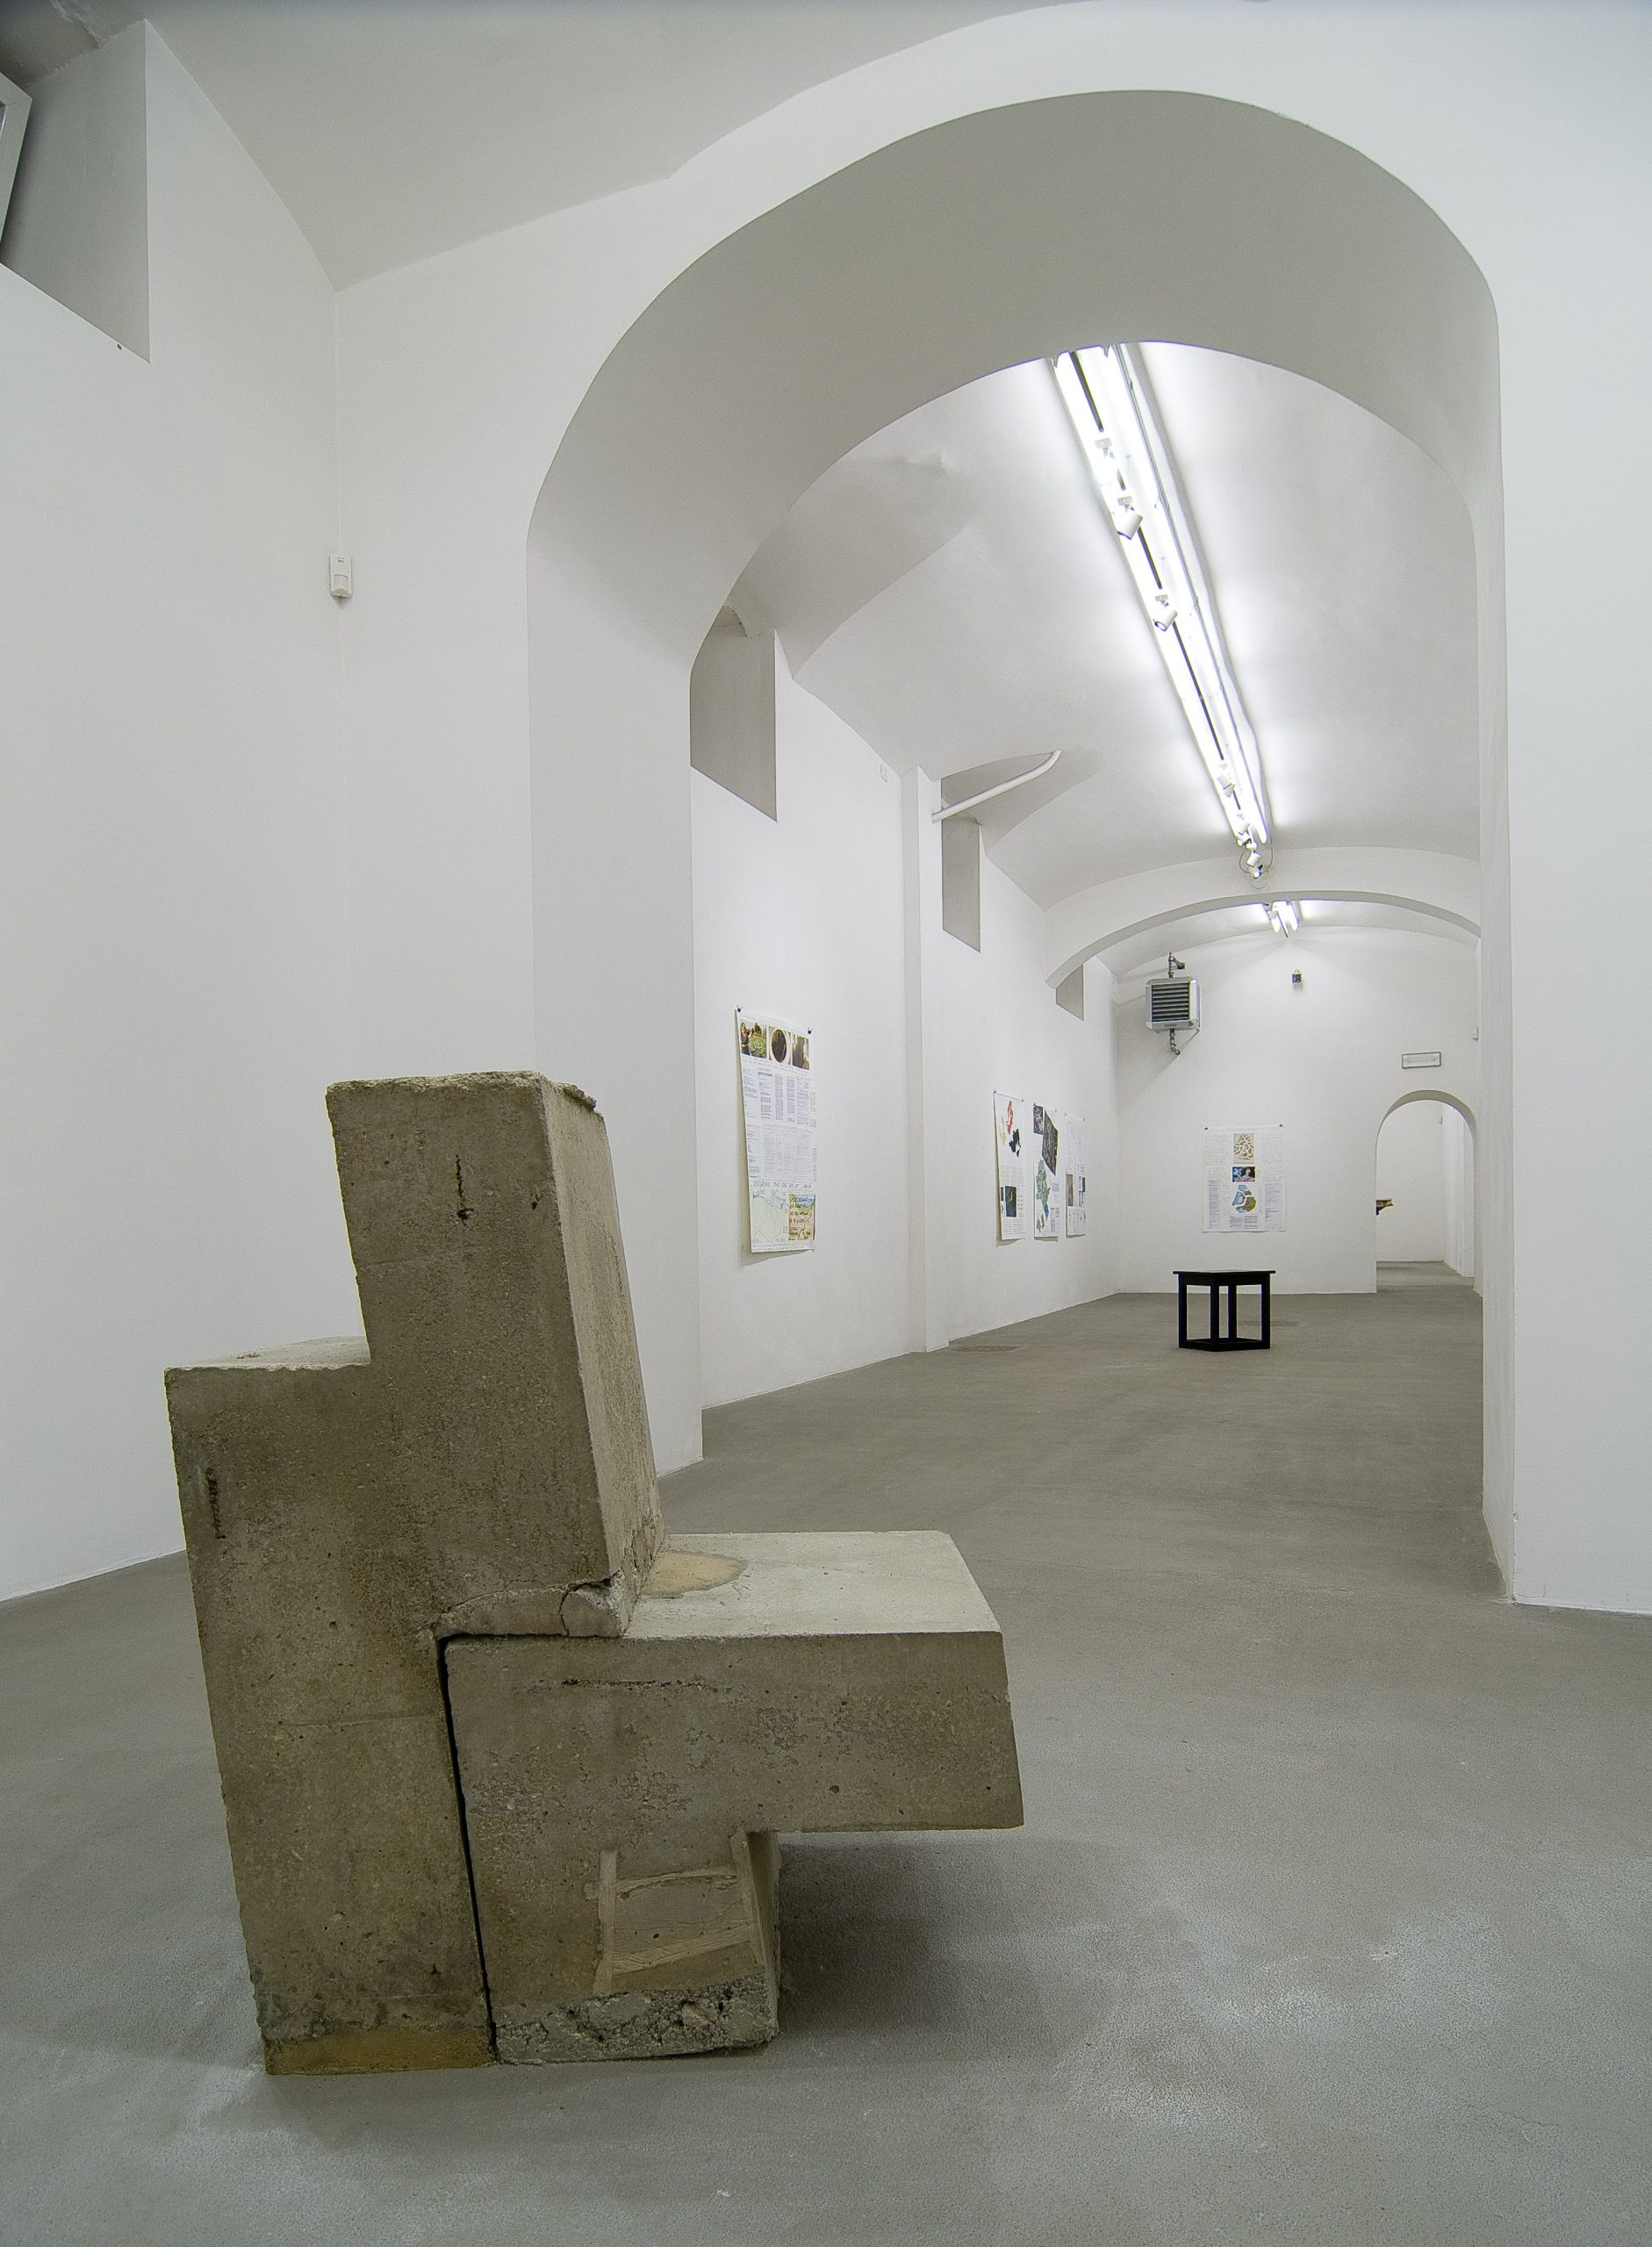 Oscar Tuazon, Scott Burton. Installation view at Fondazione Giuliani, photo by Giorgio Benni